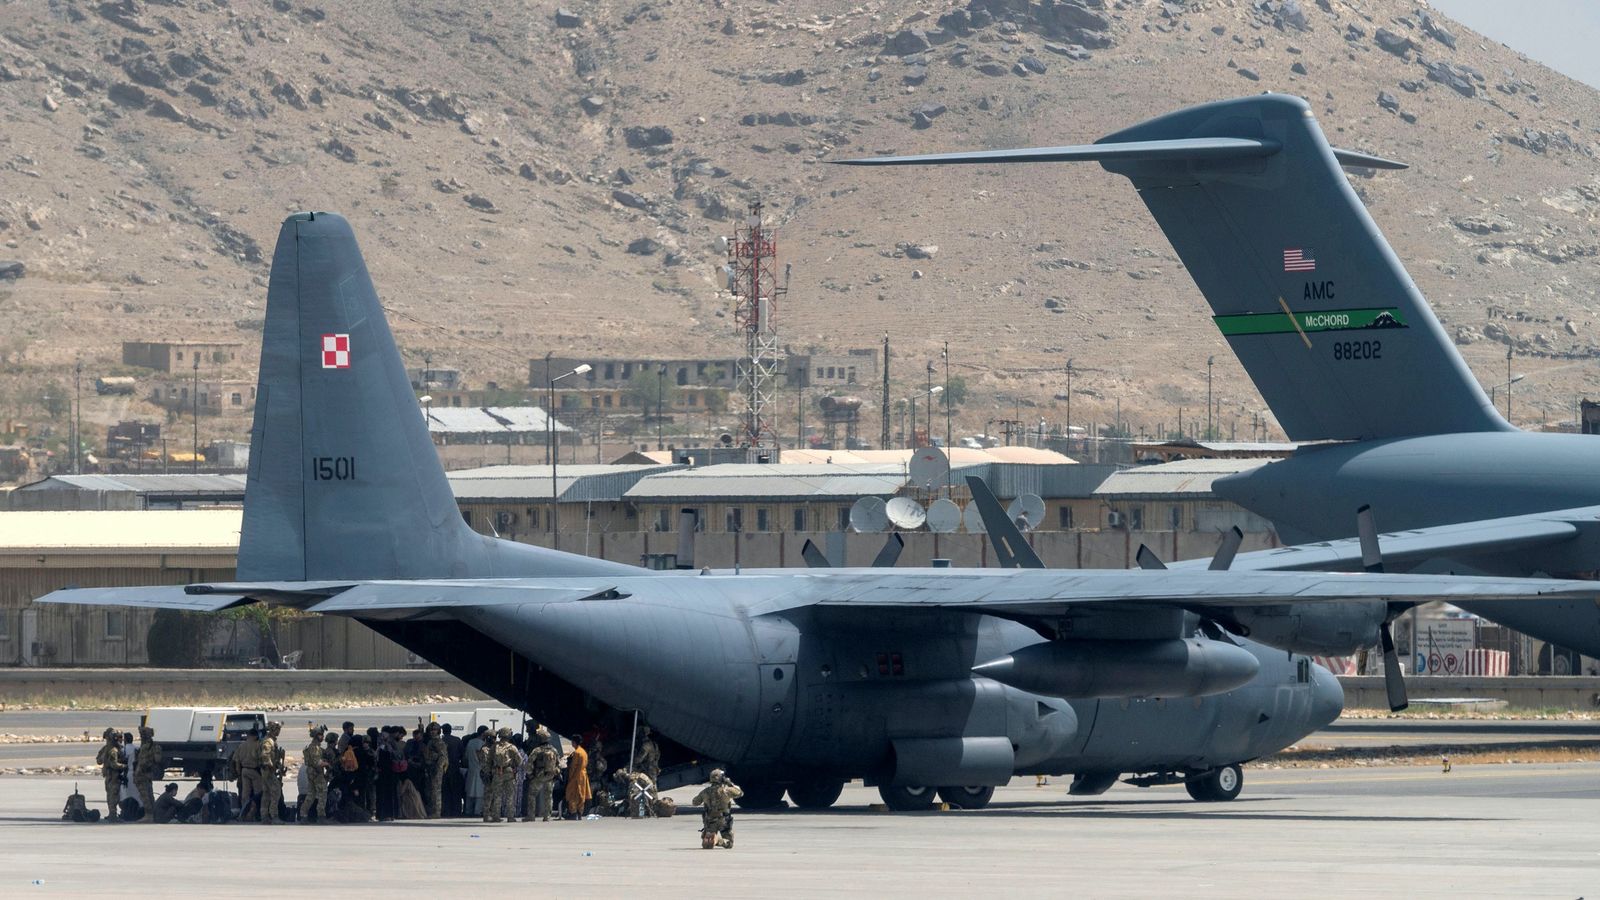 أفراد من خدمة وزارة الدفاع الأمريكية، يراقبون الطائرات في مطار حامد كرزاي الدولي في كابول أفغانستان- 17 أغسطس 2021 - via REUTERS